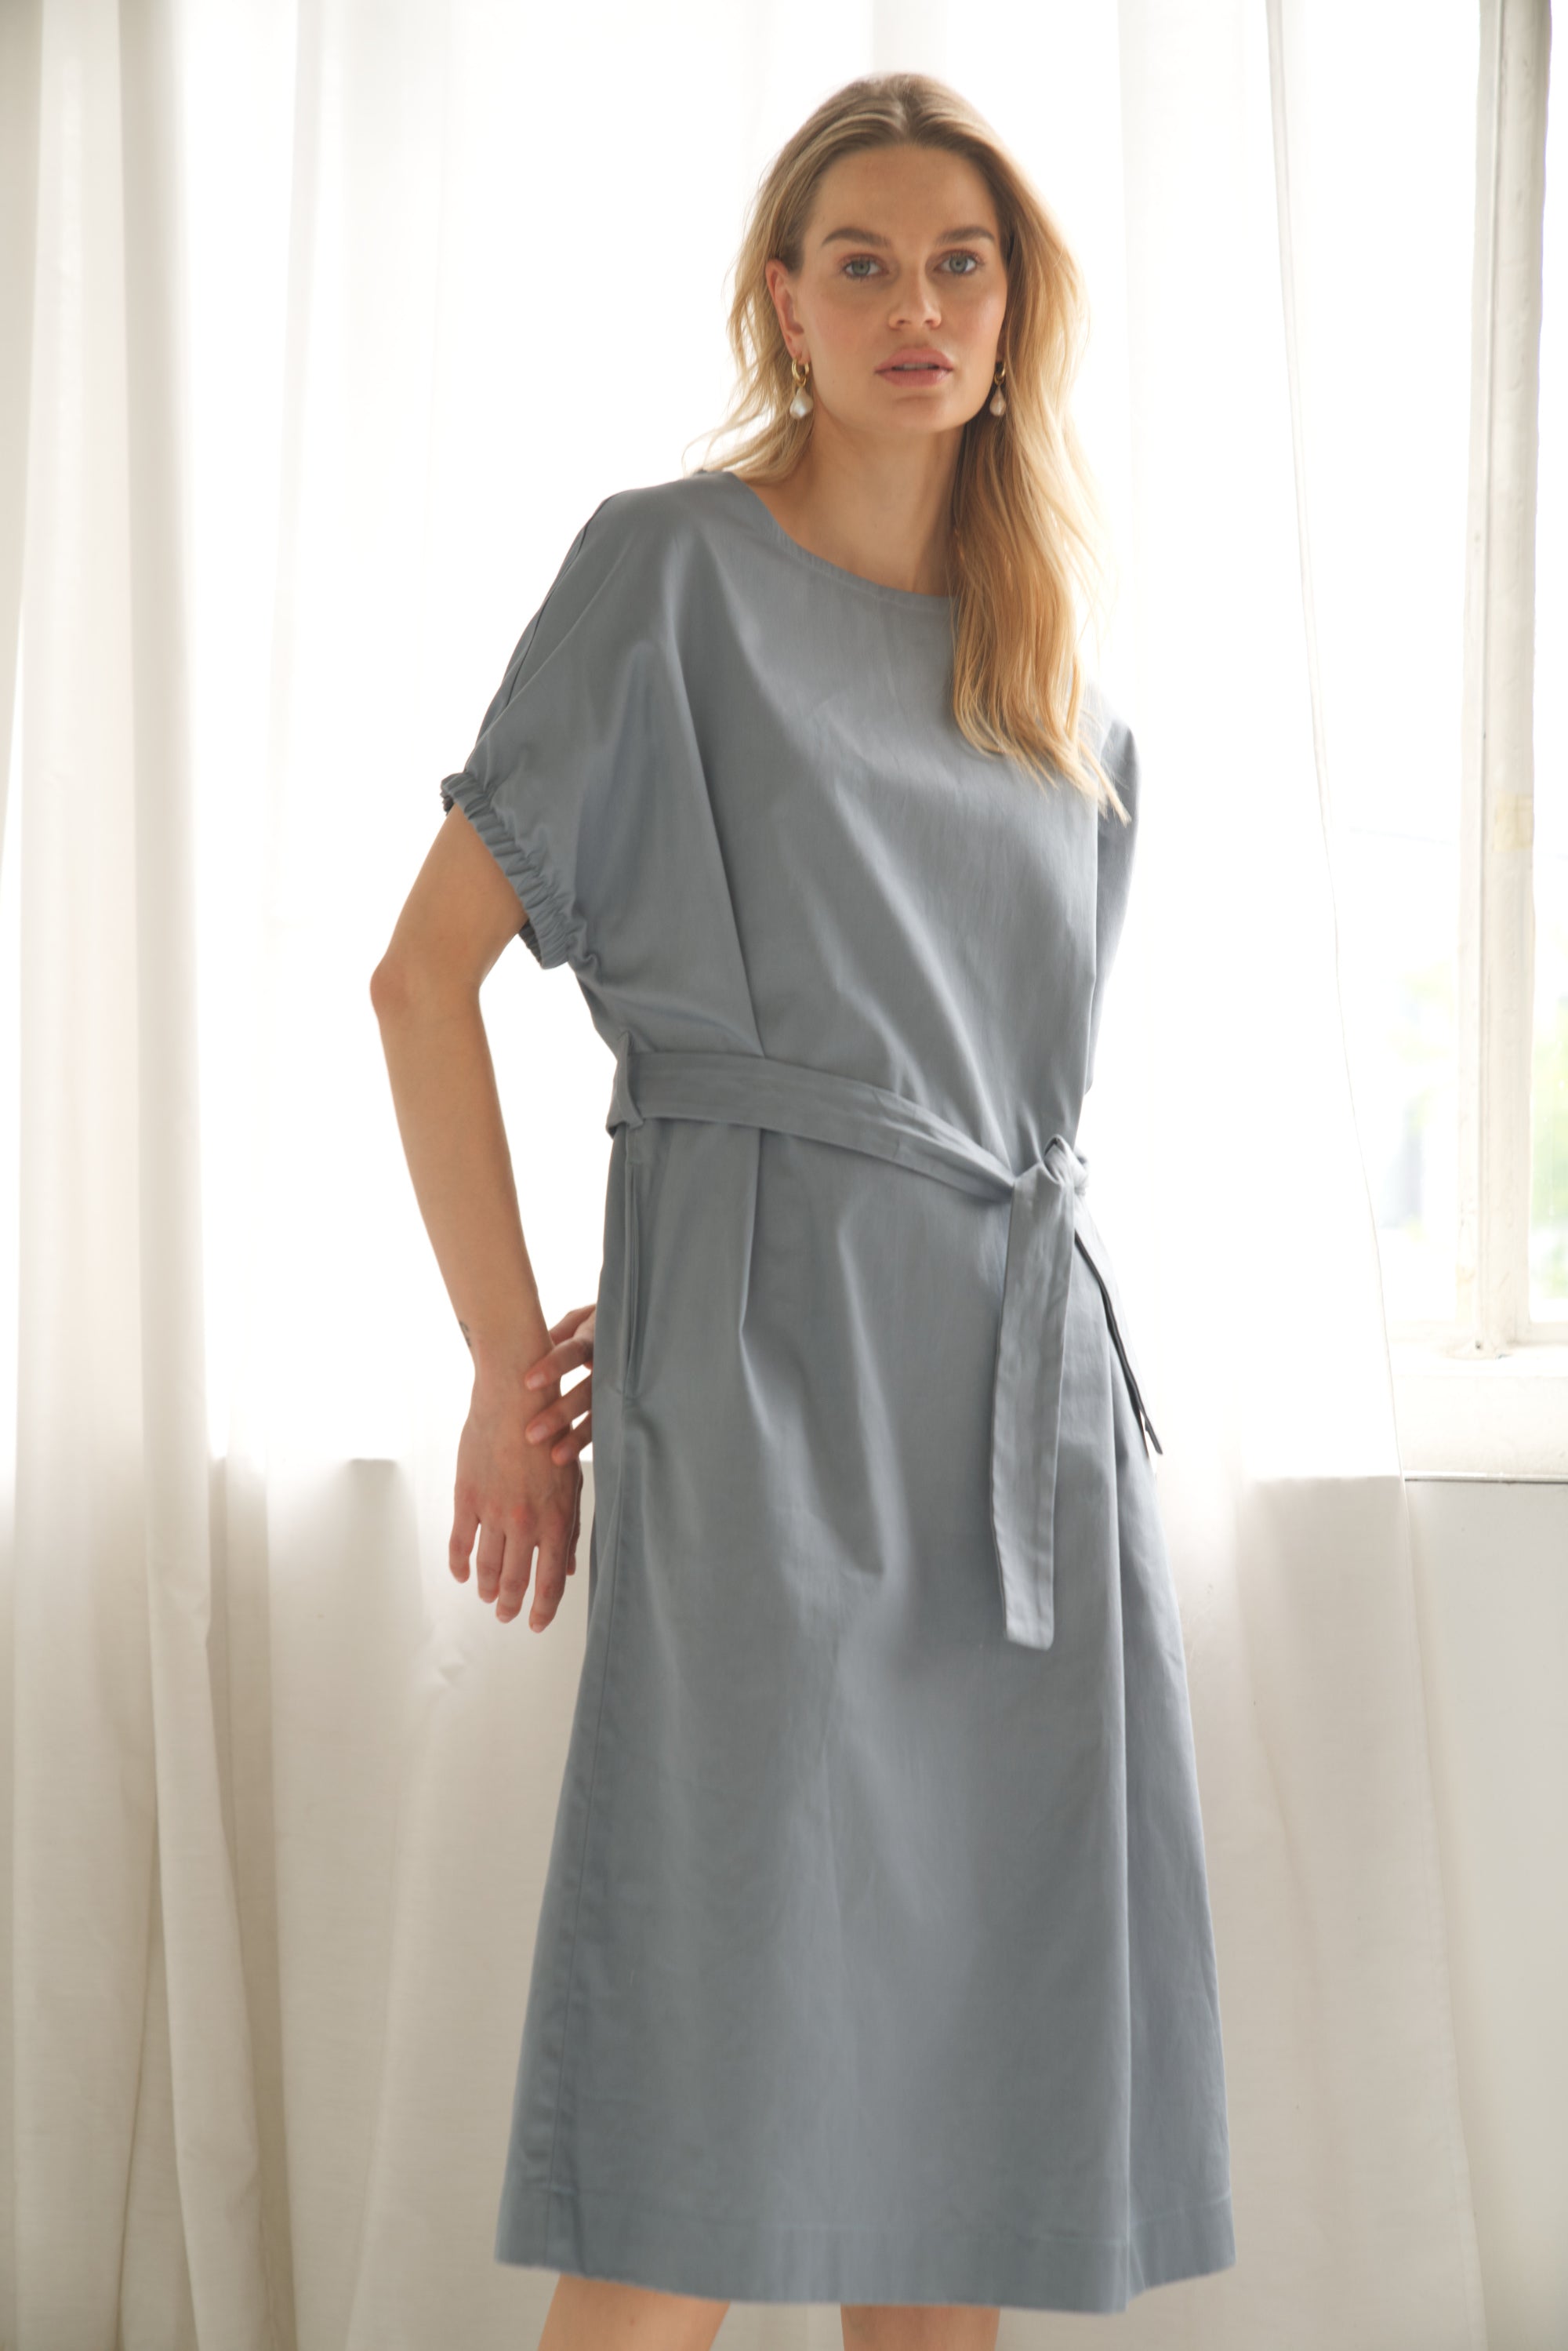 Oversize-Kleid aus Baumwolle in der Farbe blau wird von einem blonden Model getragen. Sie zeigt die Ansicht von vorne und die Arme sind hinter dem Rücken verschränkt.